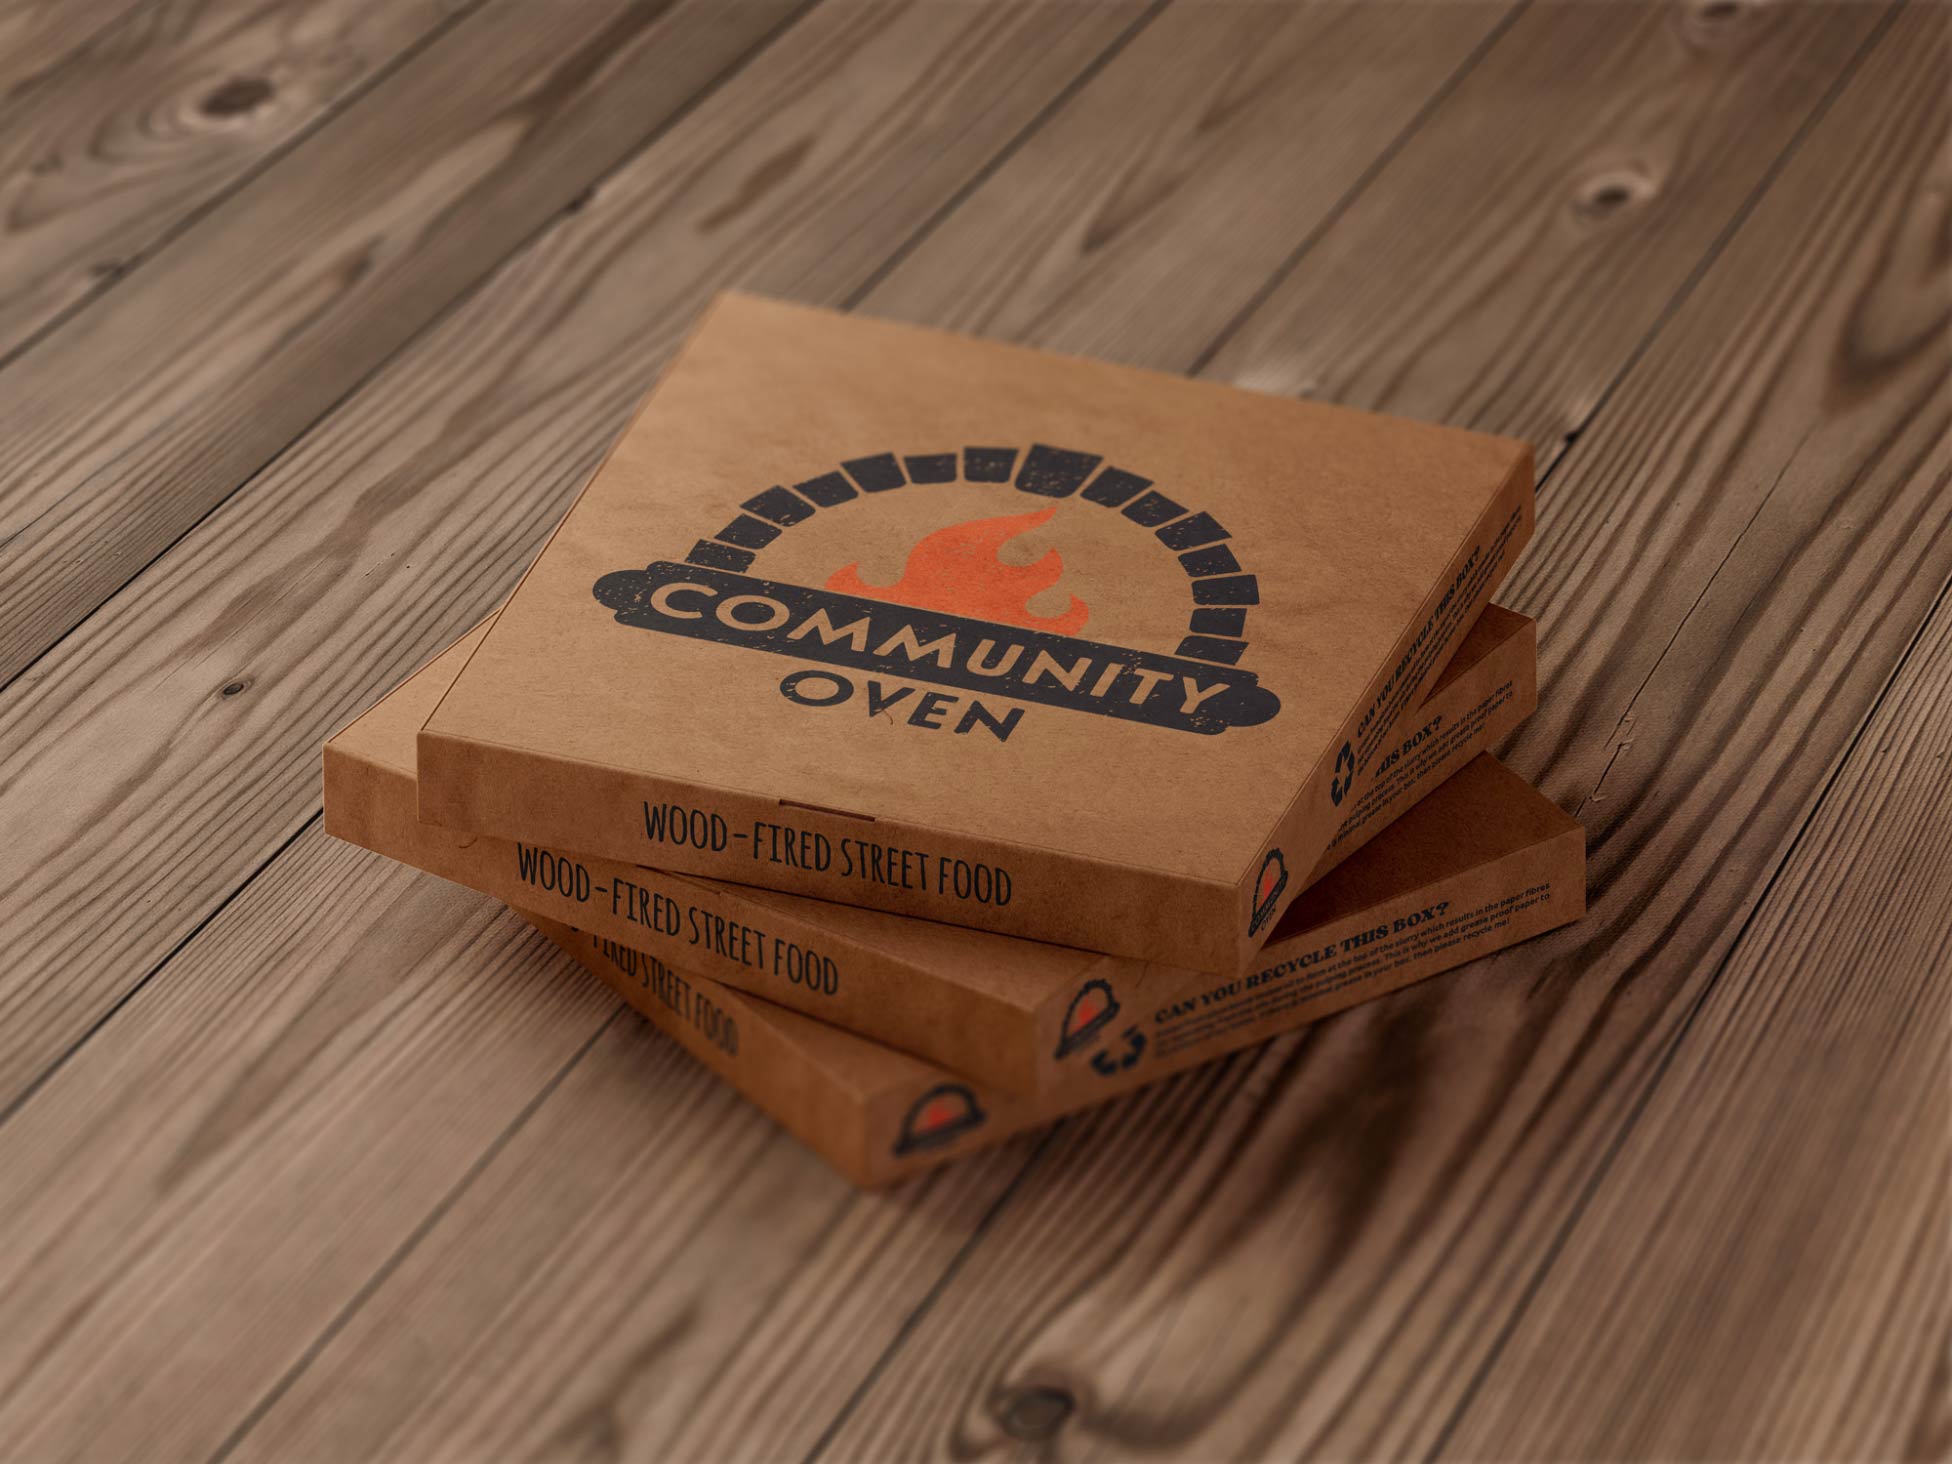 Pizza box design for Community Oven